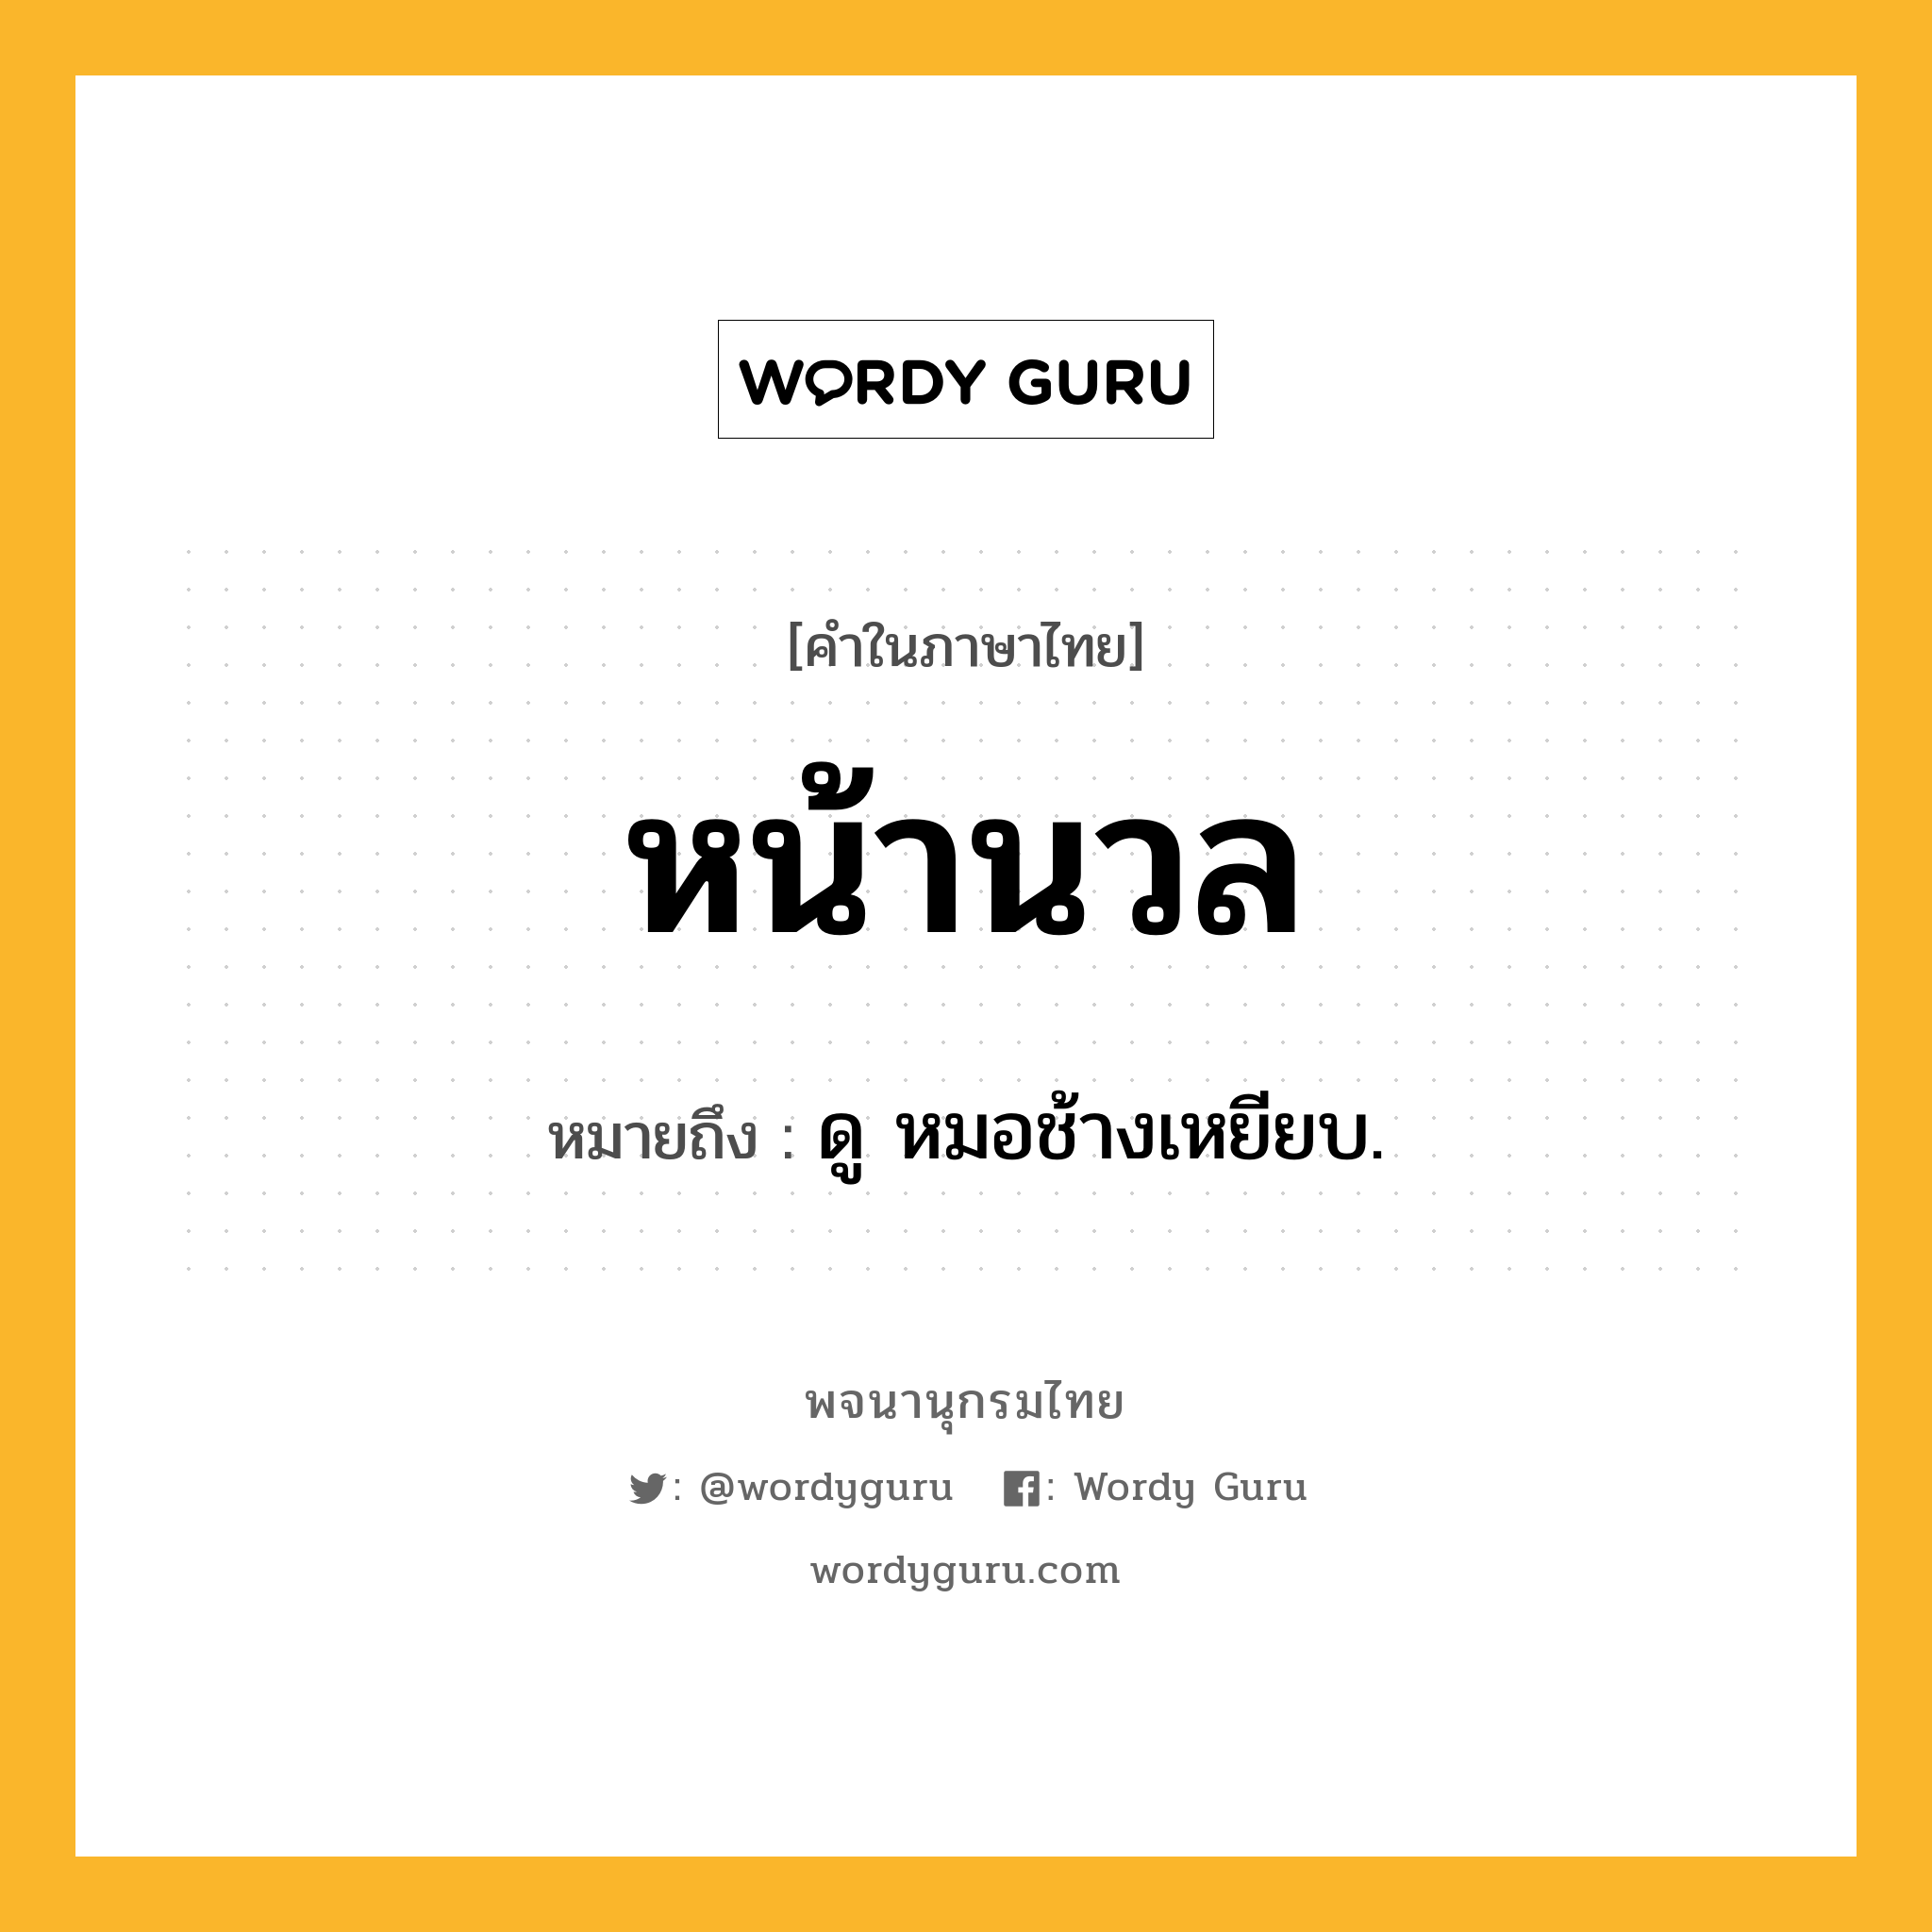 หน้านวล หมายถึงอะไร?, คำในภาษาไทย หน้านวล หมายถึง ดู หมอช้างเหยียบ.